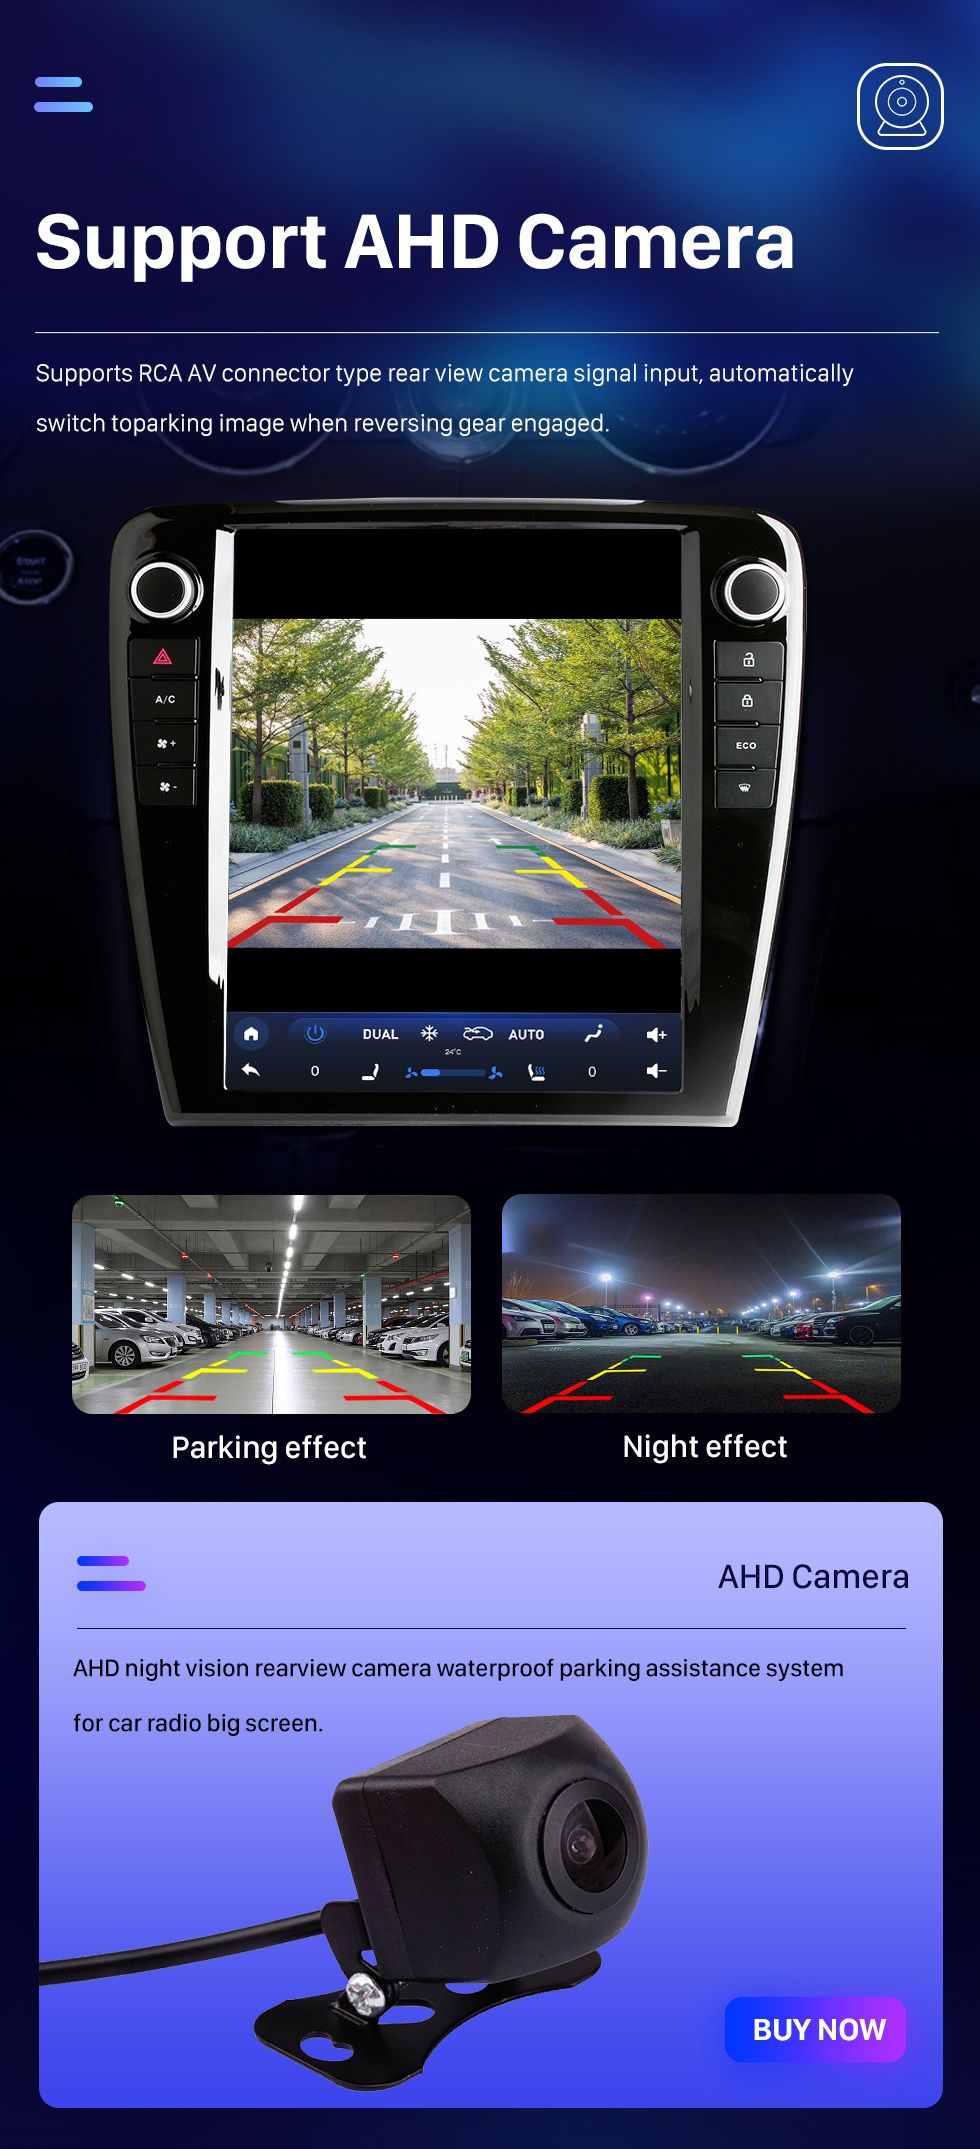 Seicane OEM 12,1 pouces Android 10.0 pour 2010-2018 Jaguar XJL Radio Système de navigation GPS avec écran tactile HD Prise en charge Bluetooth Carplay OBD2 DVR TPMS